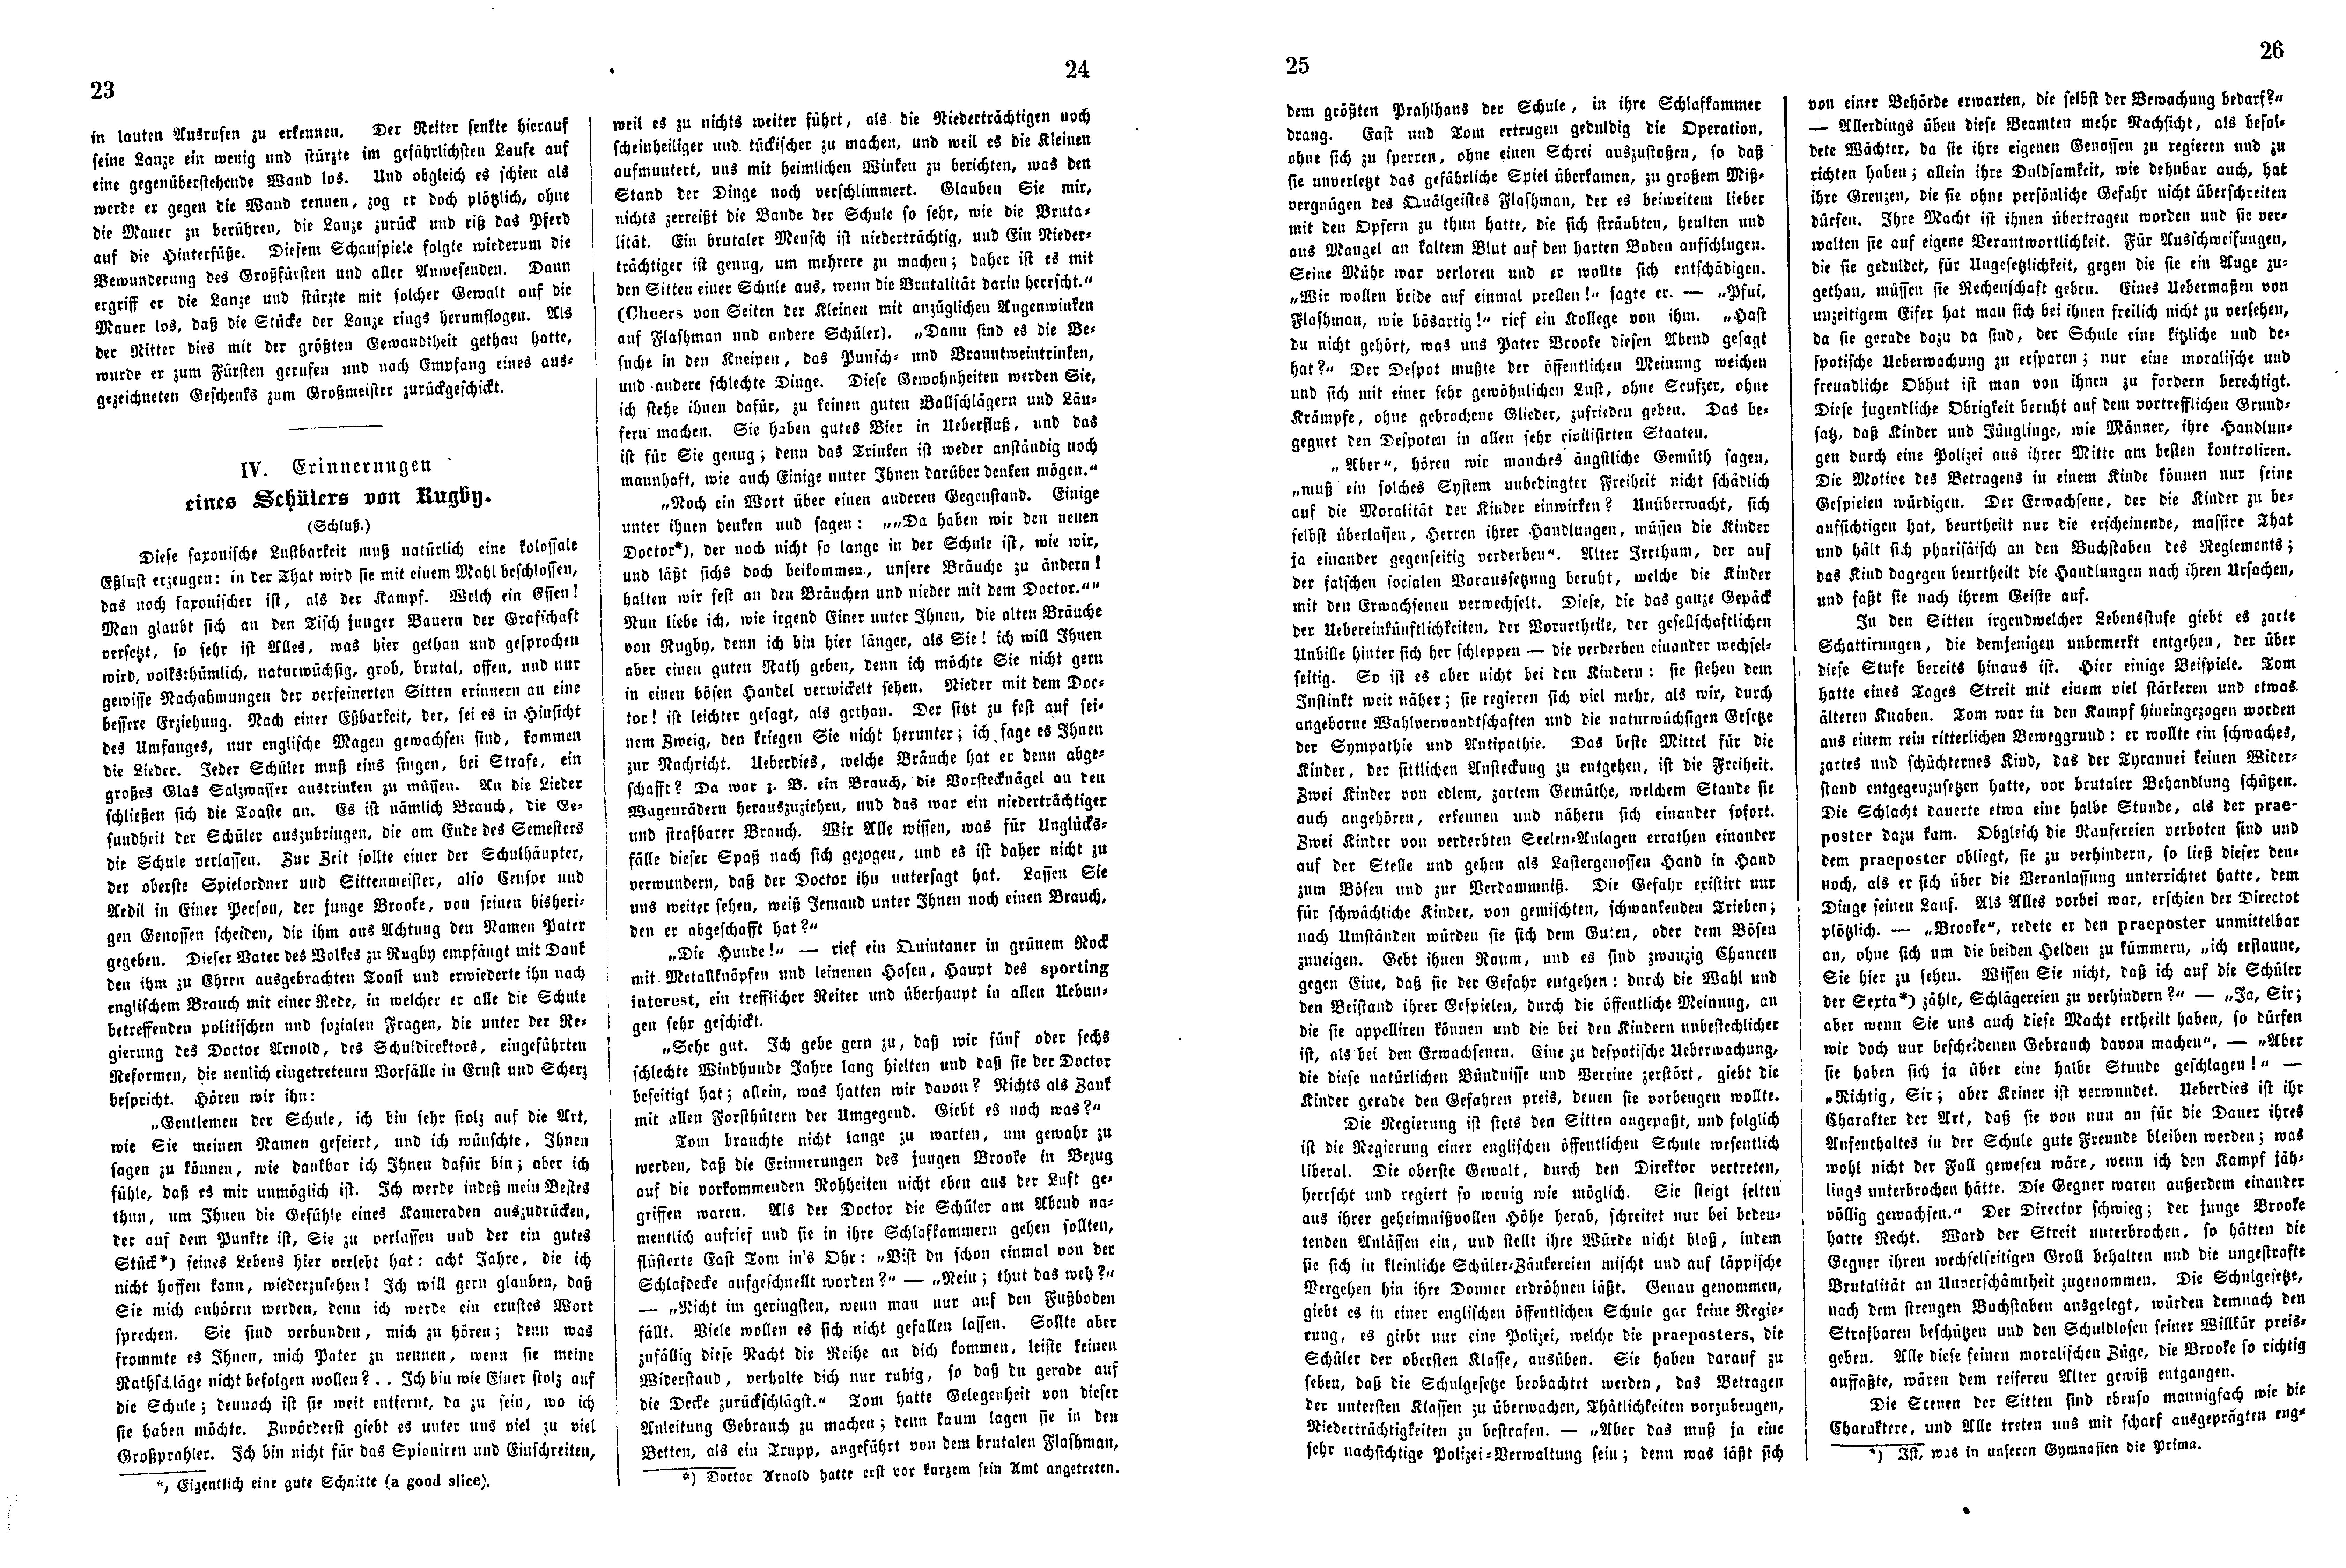 Das Inland [26] (1861) | 10. (23-26) Основной текст